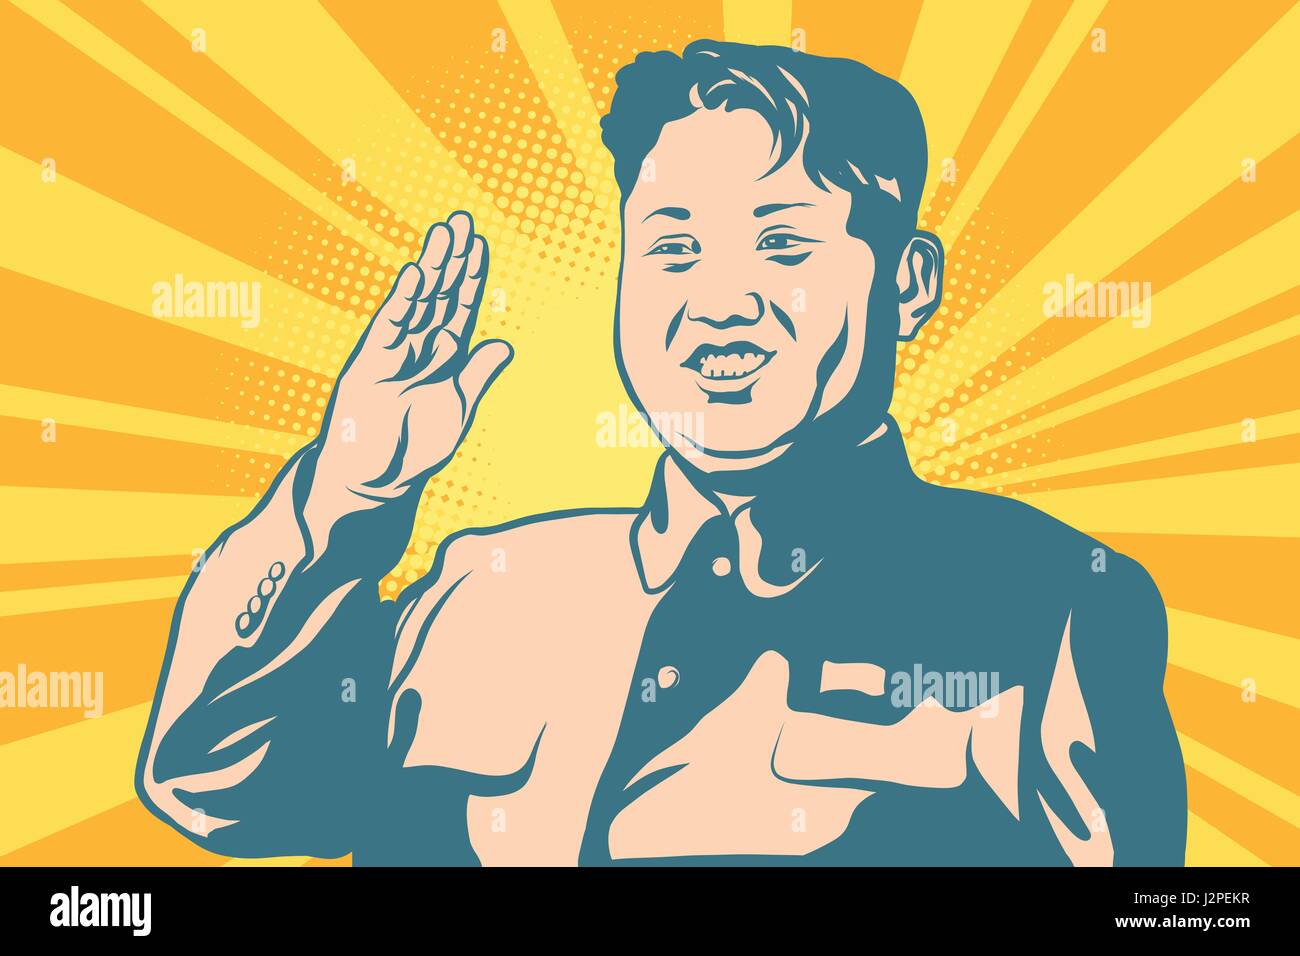 Kim Jong-un le leader de la Corée du Nord Illustration de Vecteur